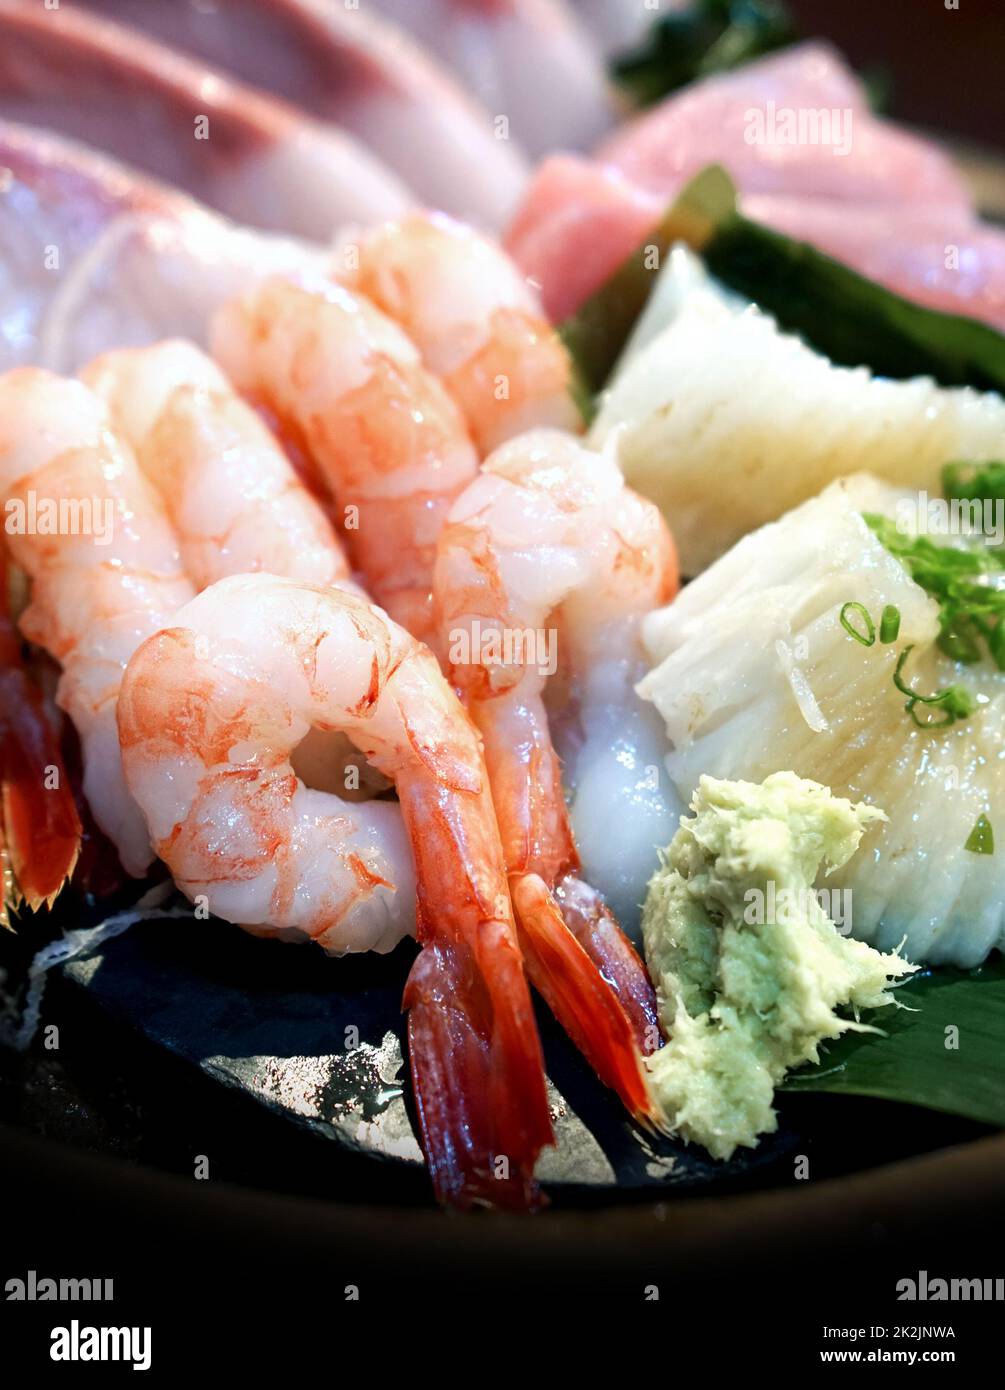 Gros plan AMA EBI dans le kit sashimi. Choix du chef : crevettes, engawa, thon et hamachi Banque D'Images